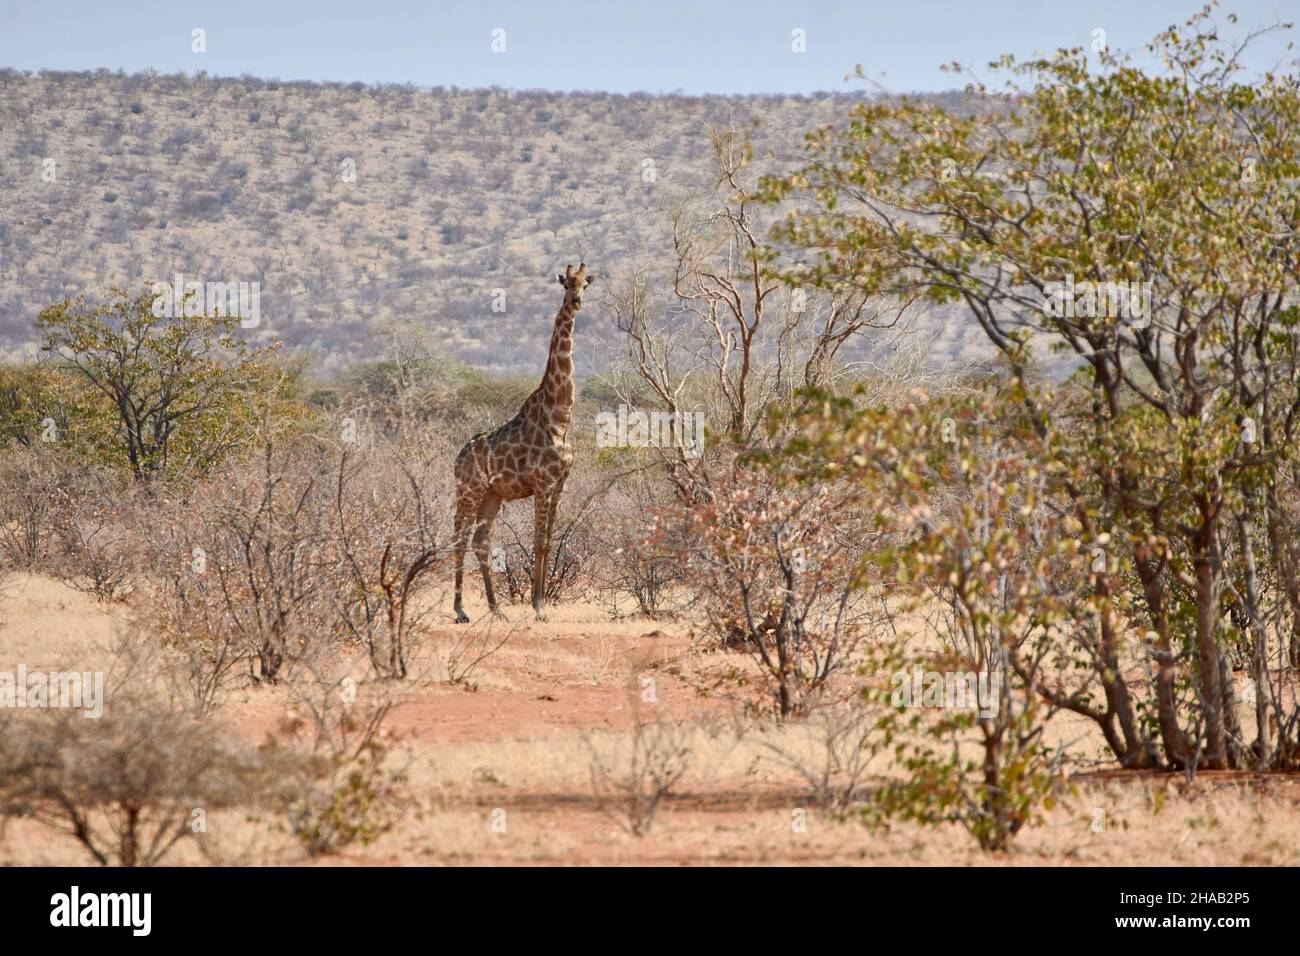 Une girafe angolaise (Giraffa camelopardalis angolensis) dans le paysage africain du parc national d'Etosha, en Namibie. Banque D'Images